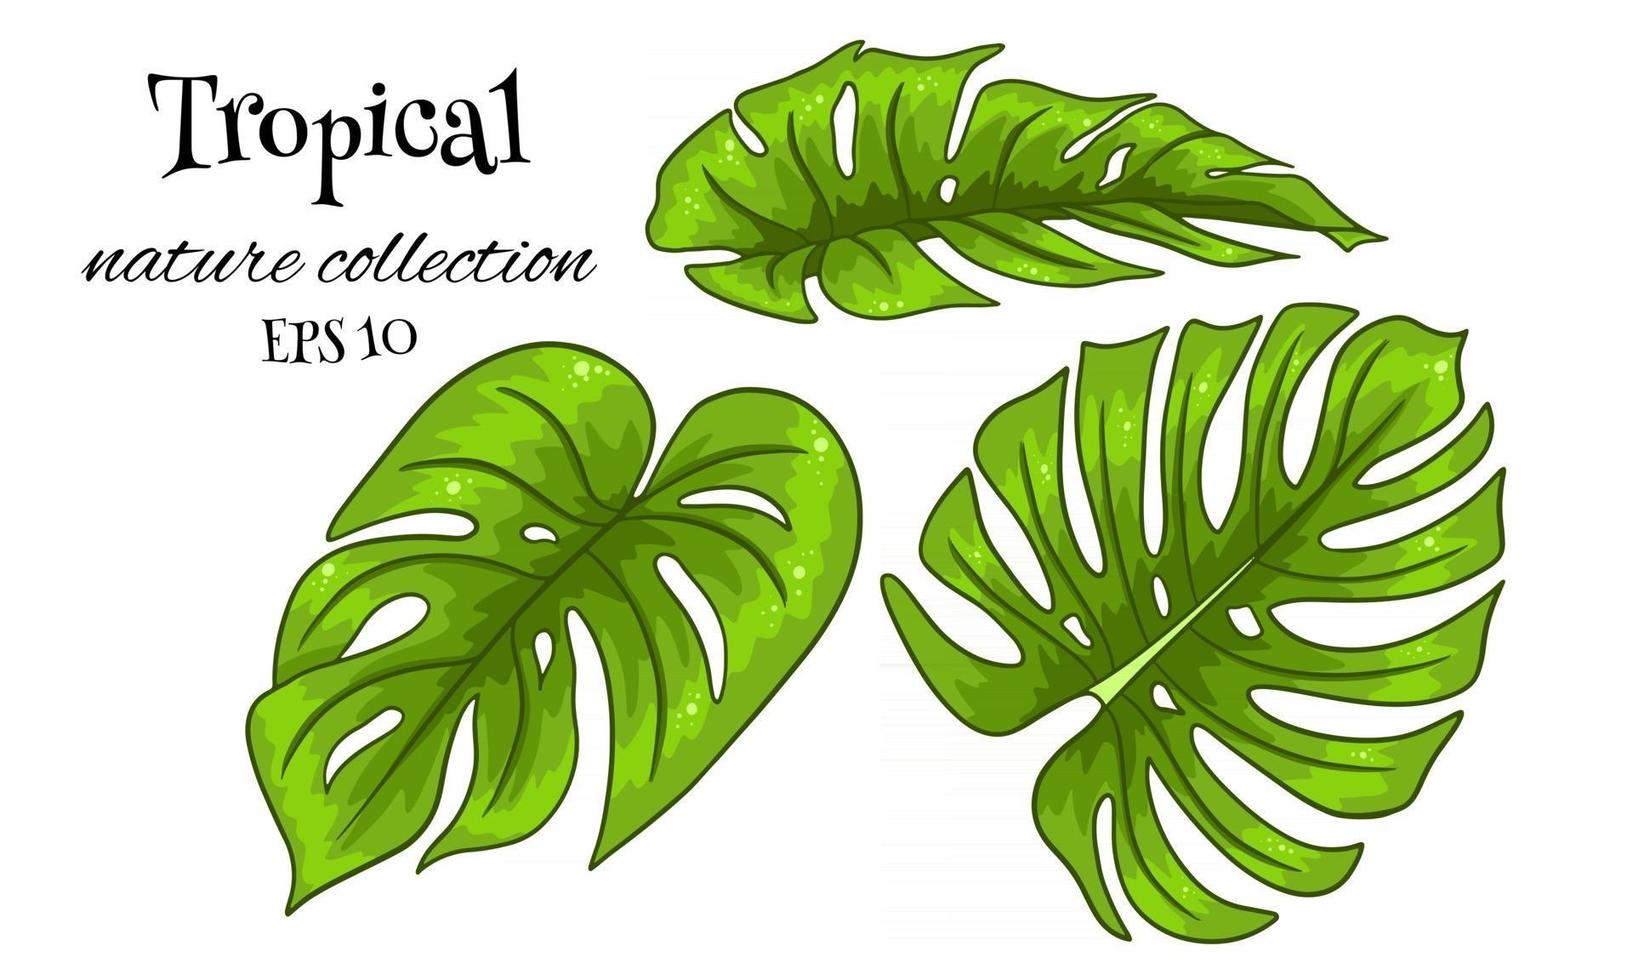 ensemble tropical avec des feuilles de palmier sculptées exotiques en style cartoon vecteur